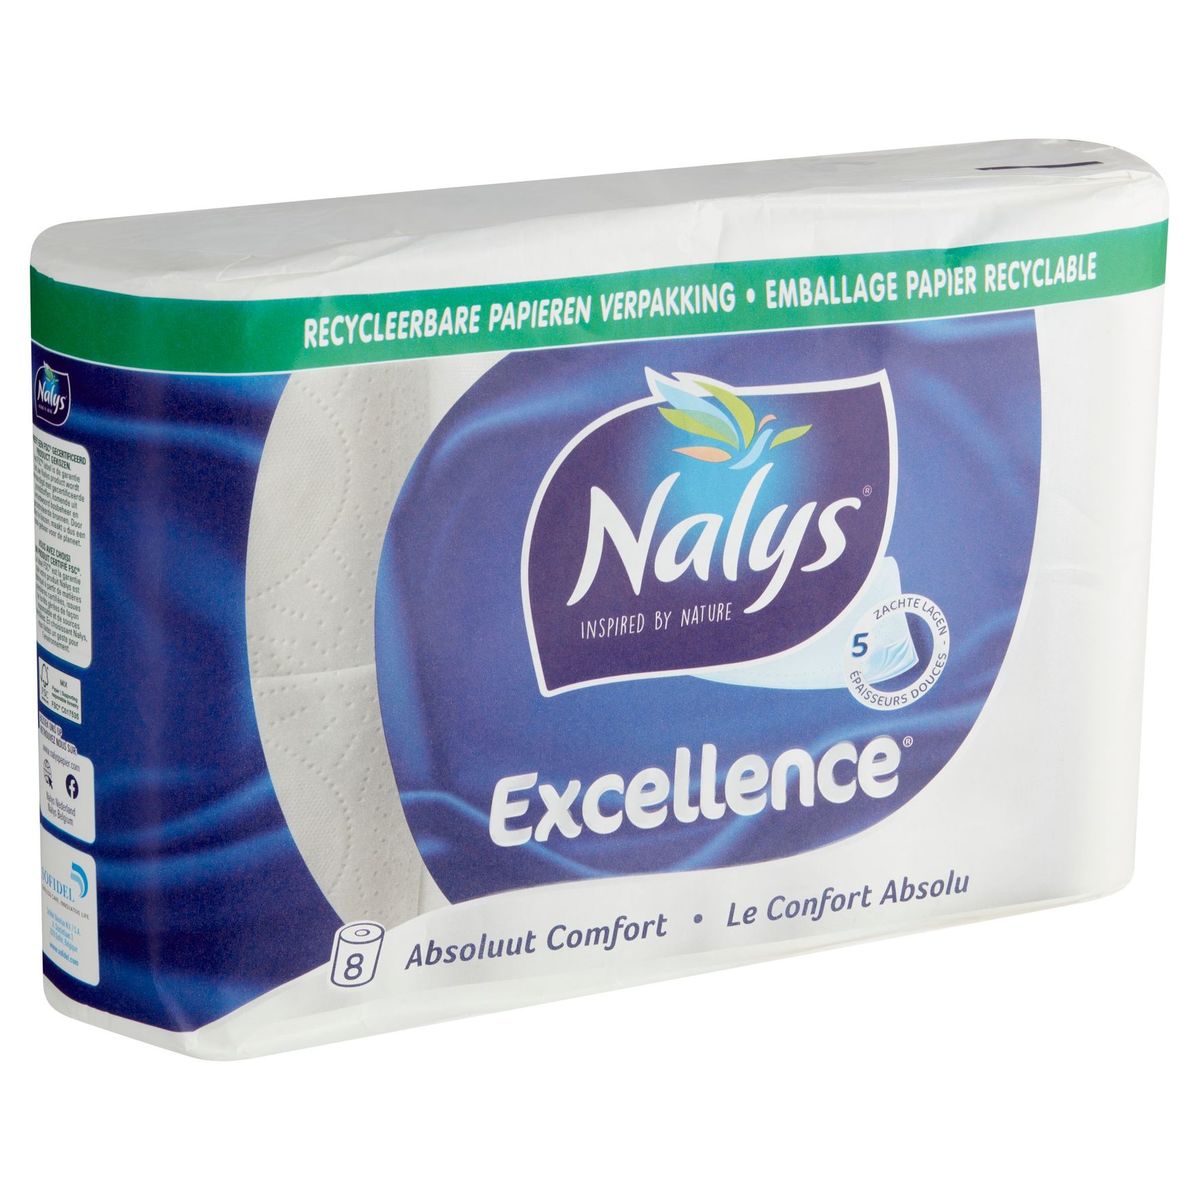 Nalys Excellence 5 Épaisseurs Douces papier toilette 8 Rouleaux